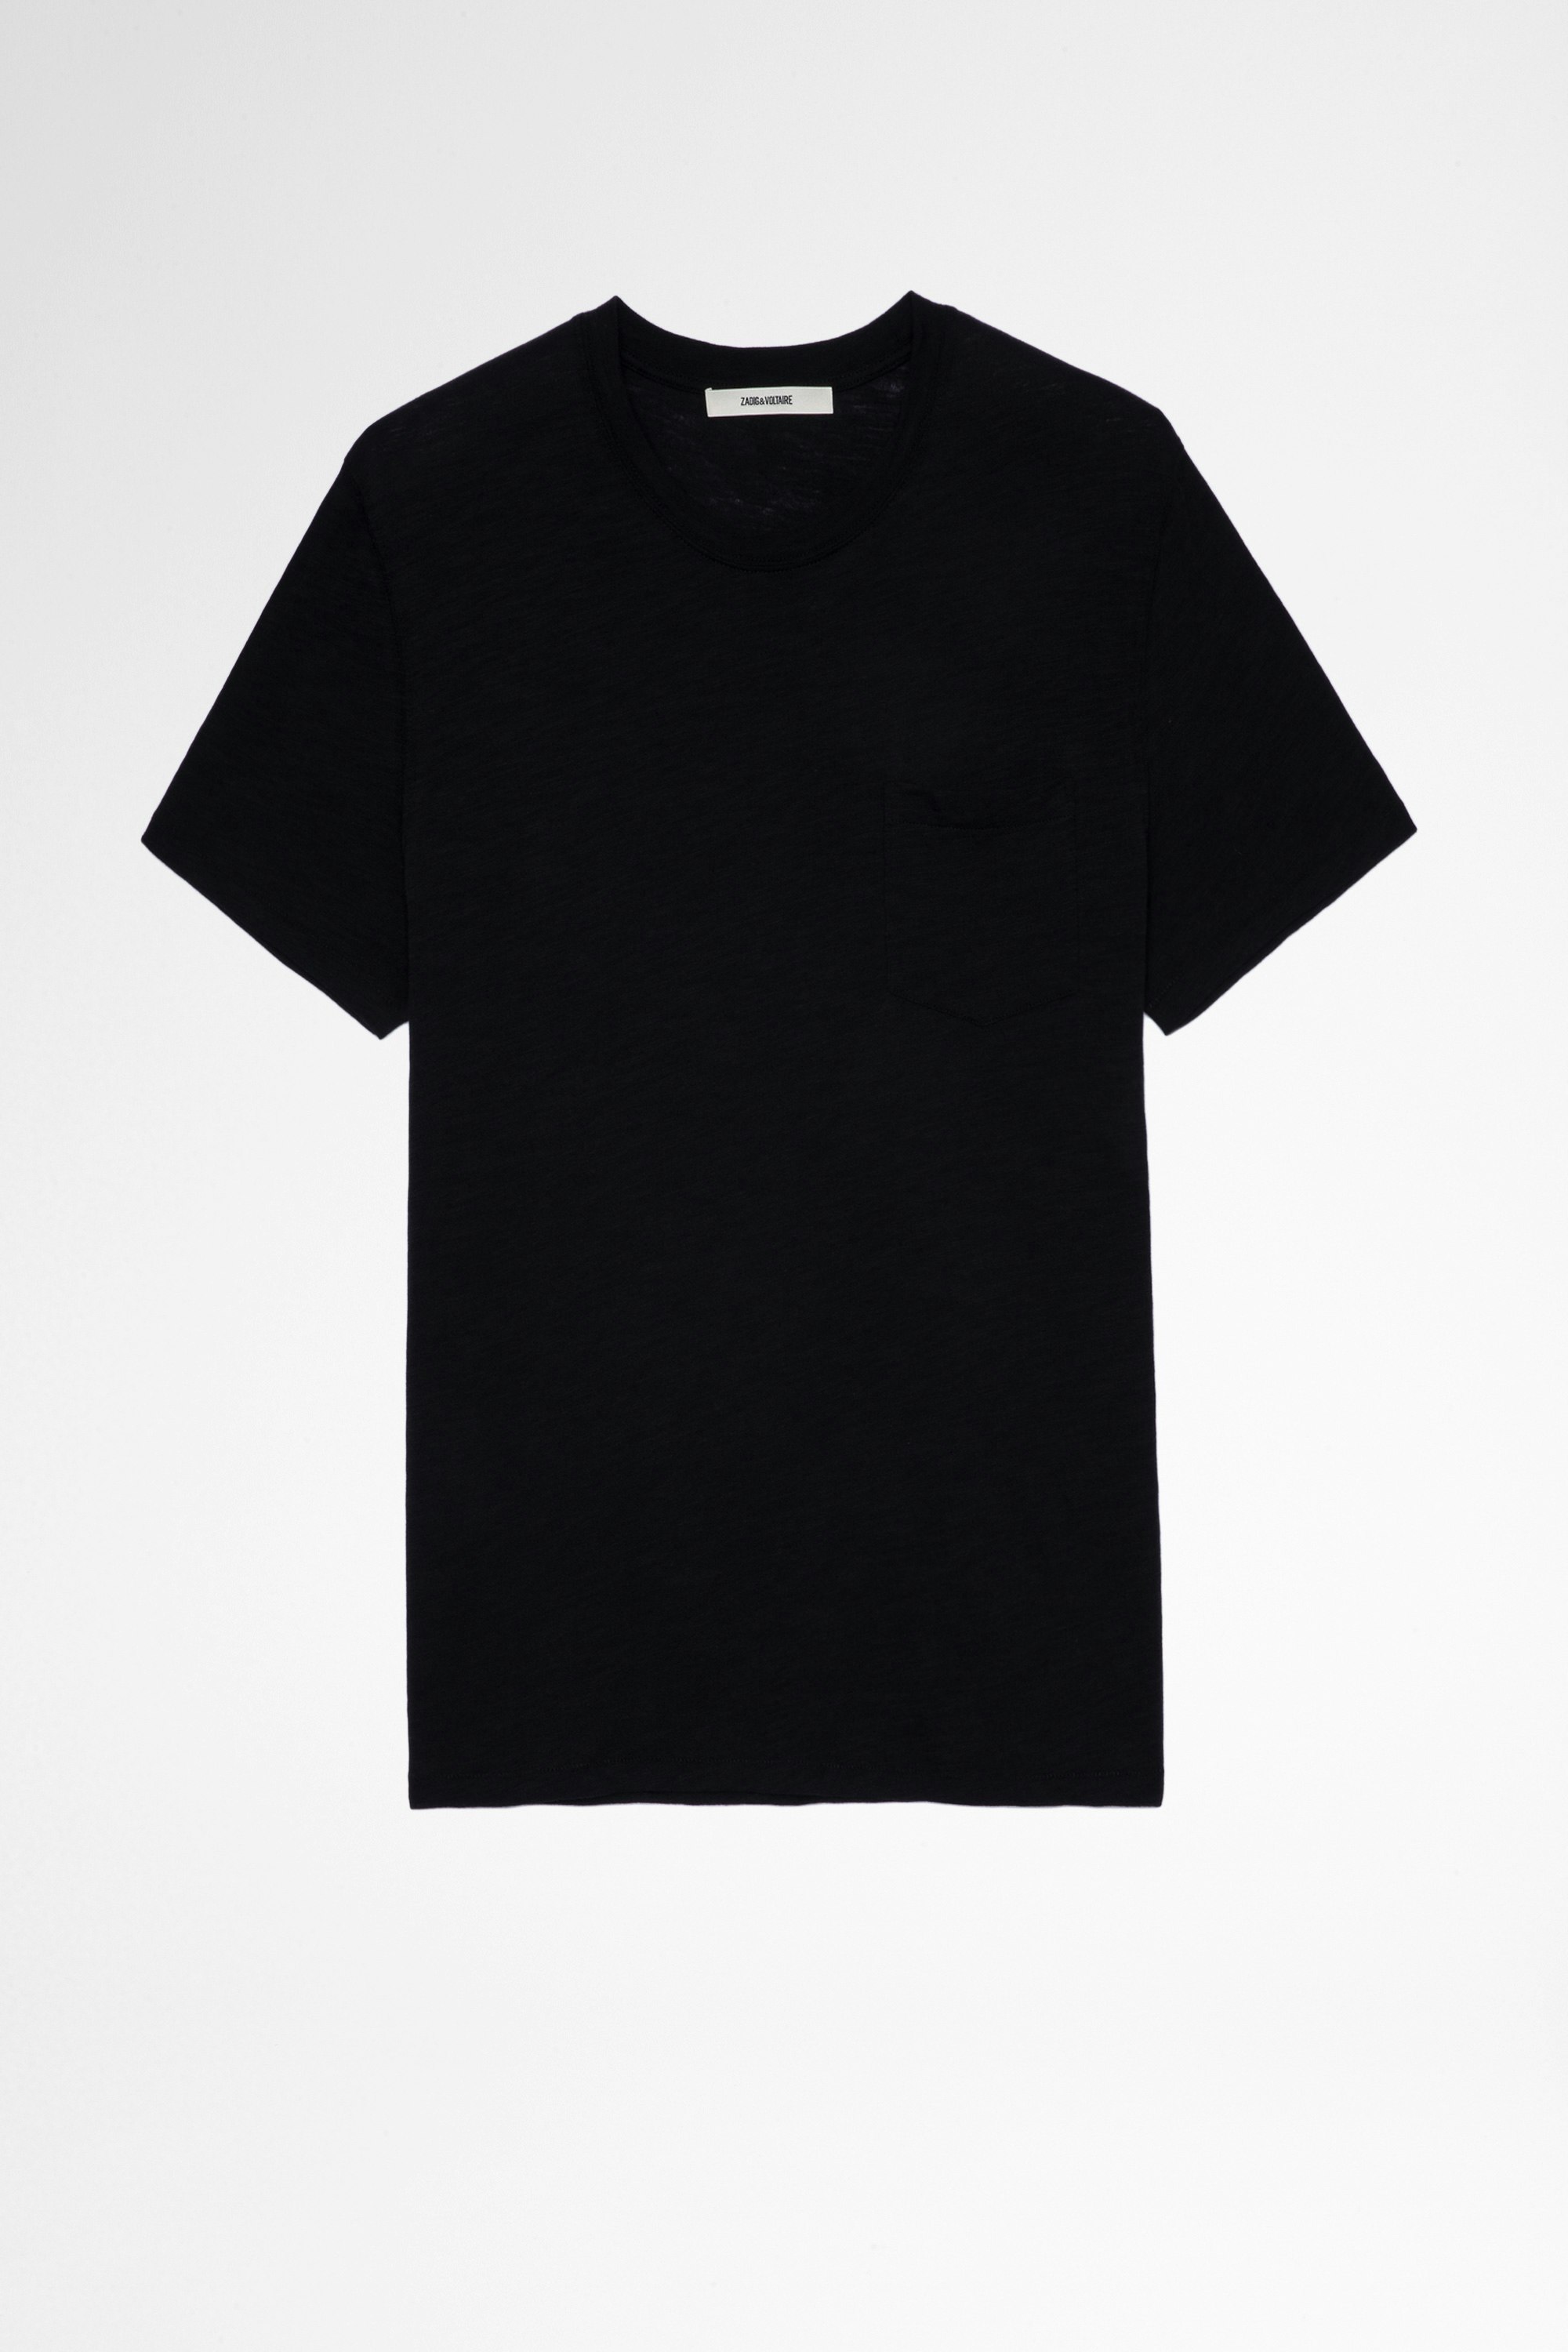 T-Shirt Stockholm Herren-T-Shirt aus schwarzer Baumwolle mit Totenkopf-Print hinten. Hergestellt mit Fasern aus biologischem Anbau